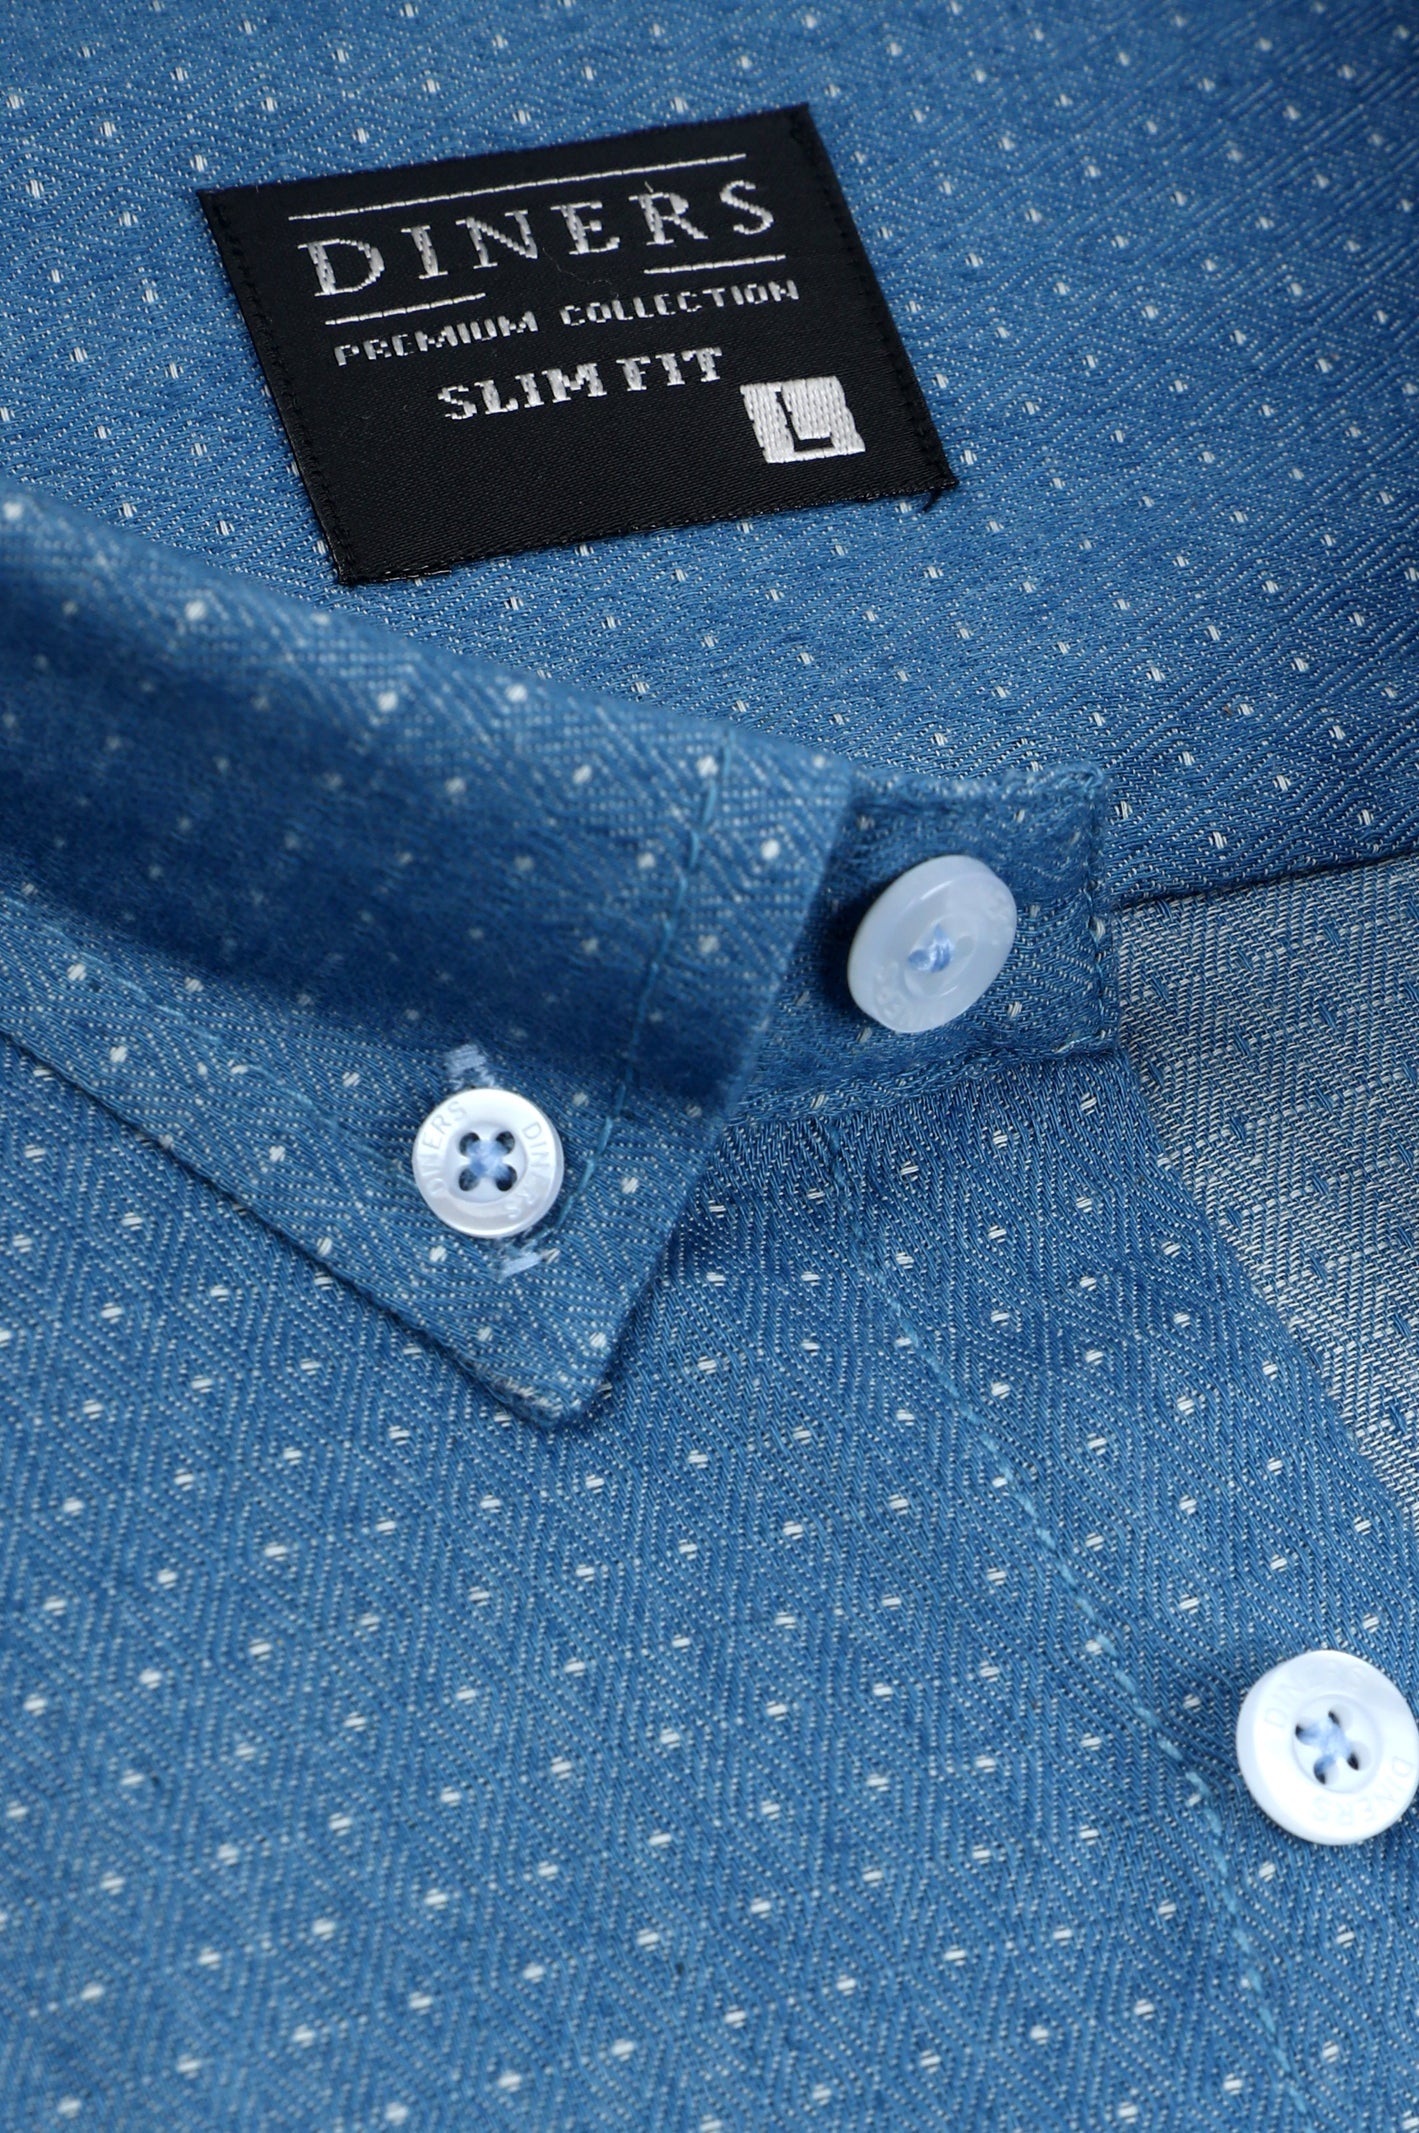 Casual Shirt in L-Blue SKU: AM24531-L-BLUE - Diners